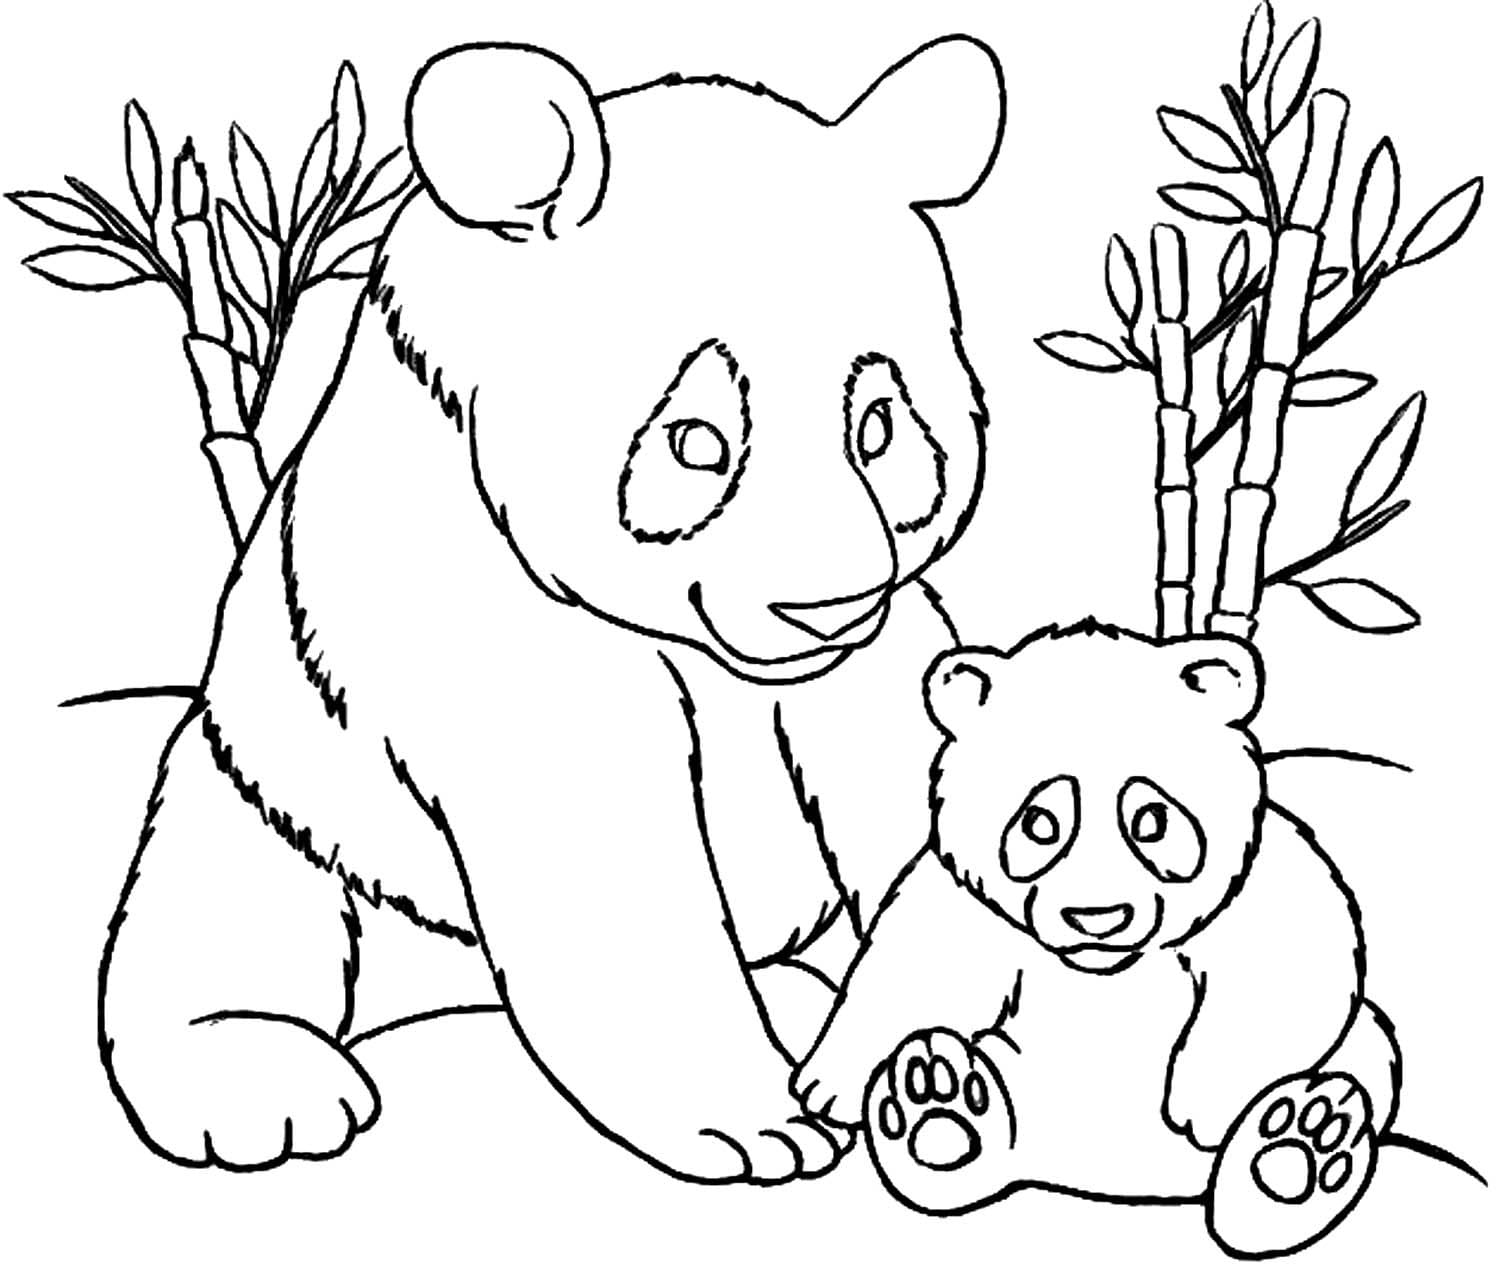 30+ Desenhos de Panda para colorir - Dicas Práticas